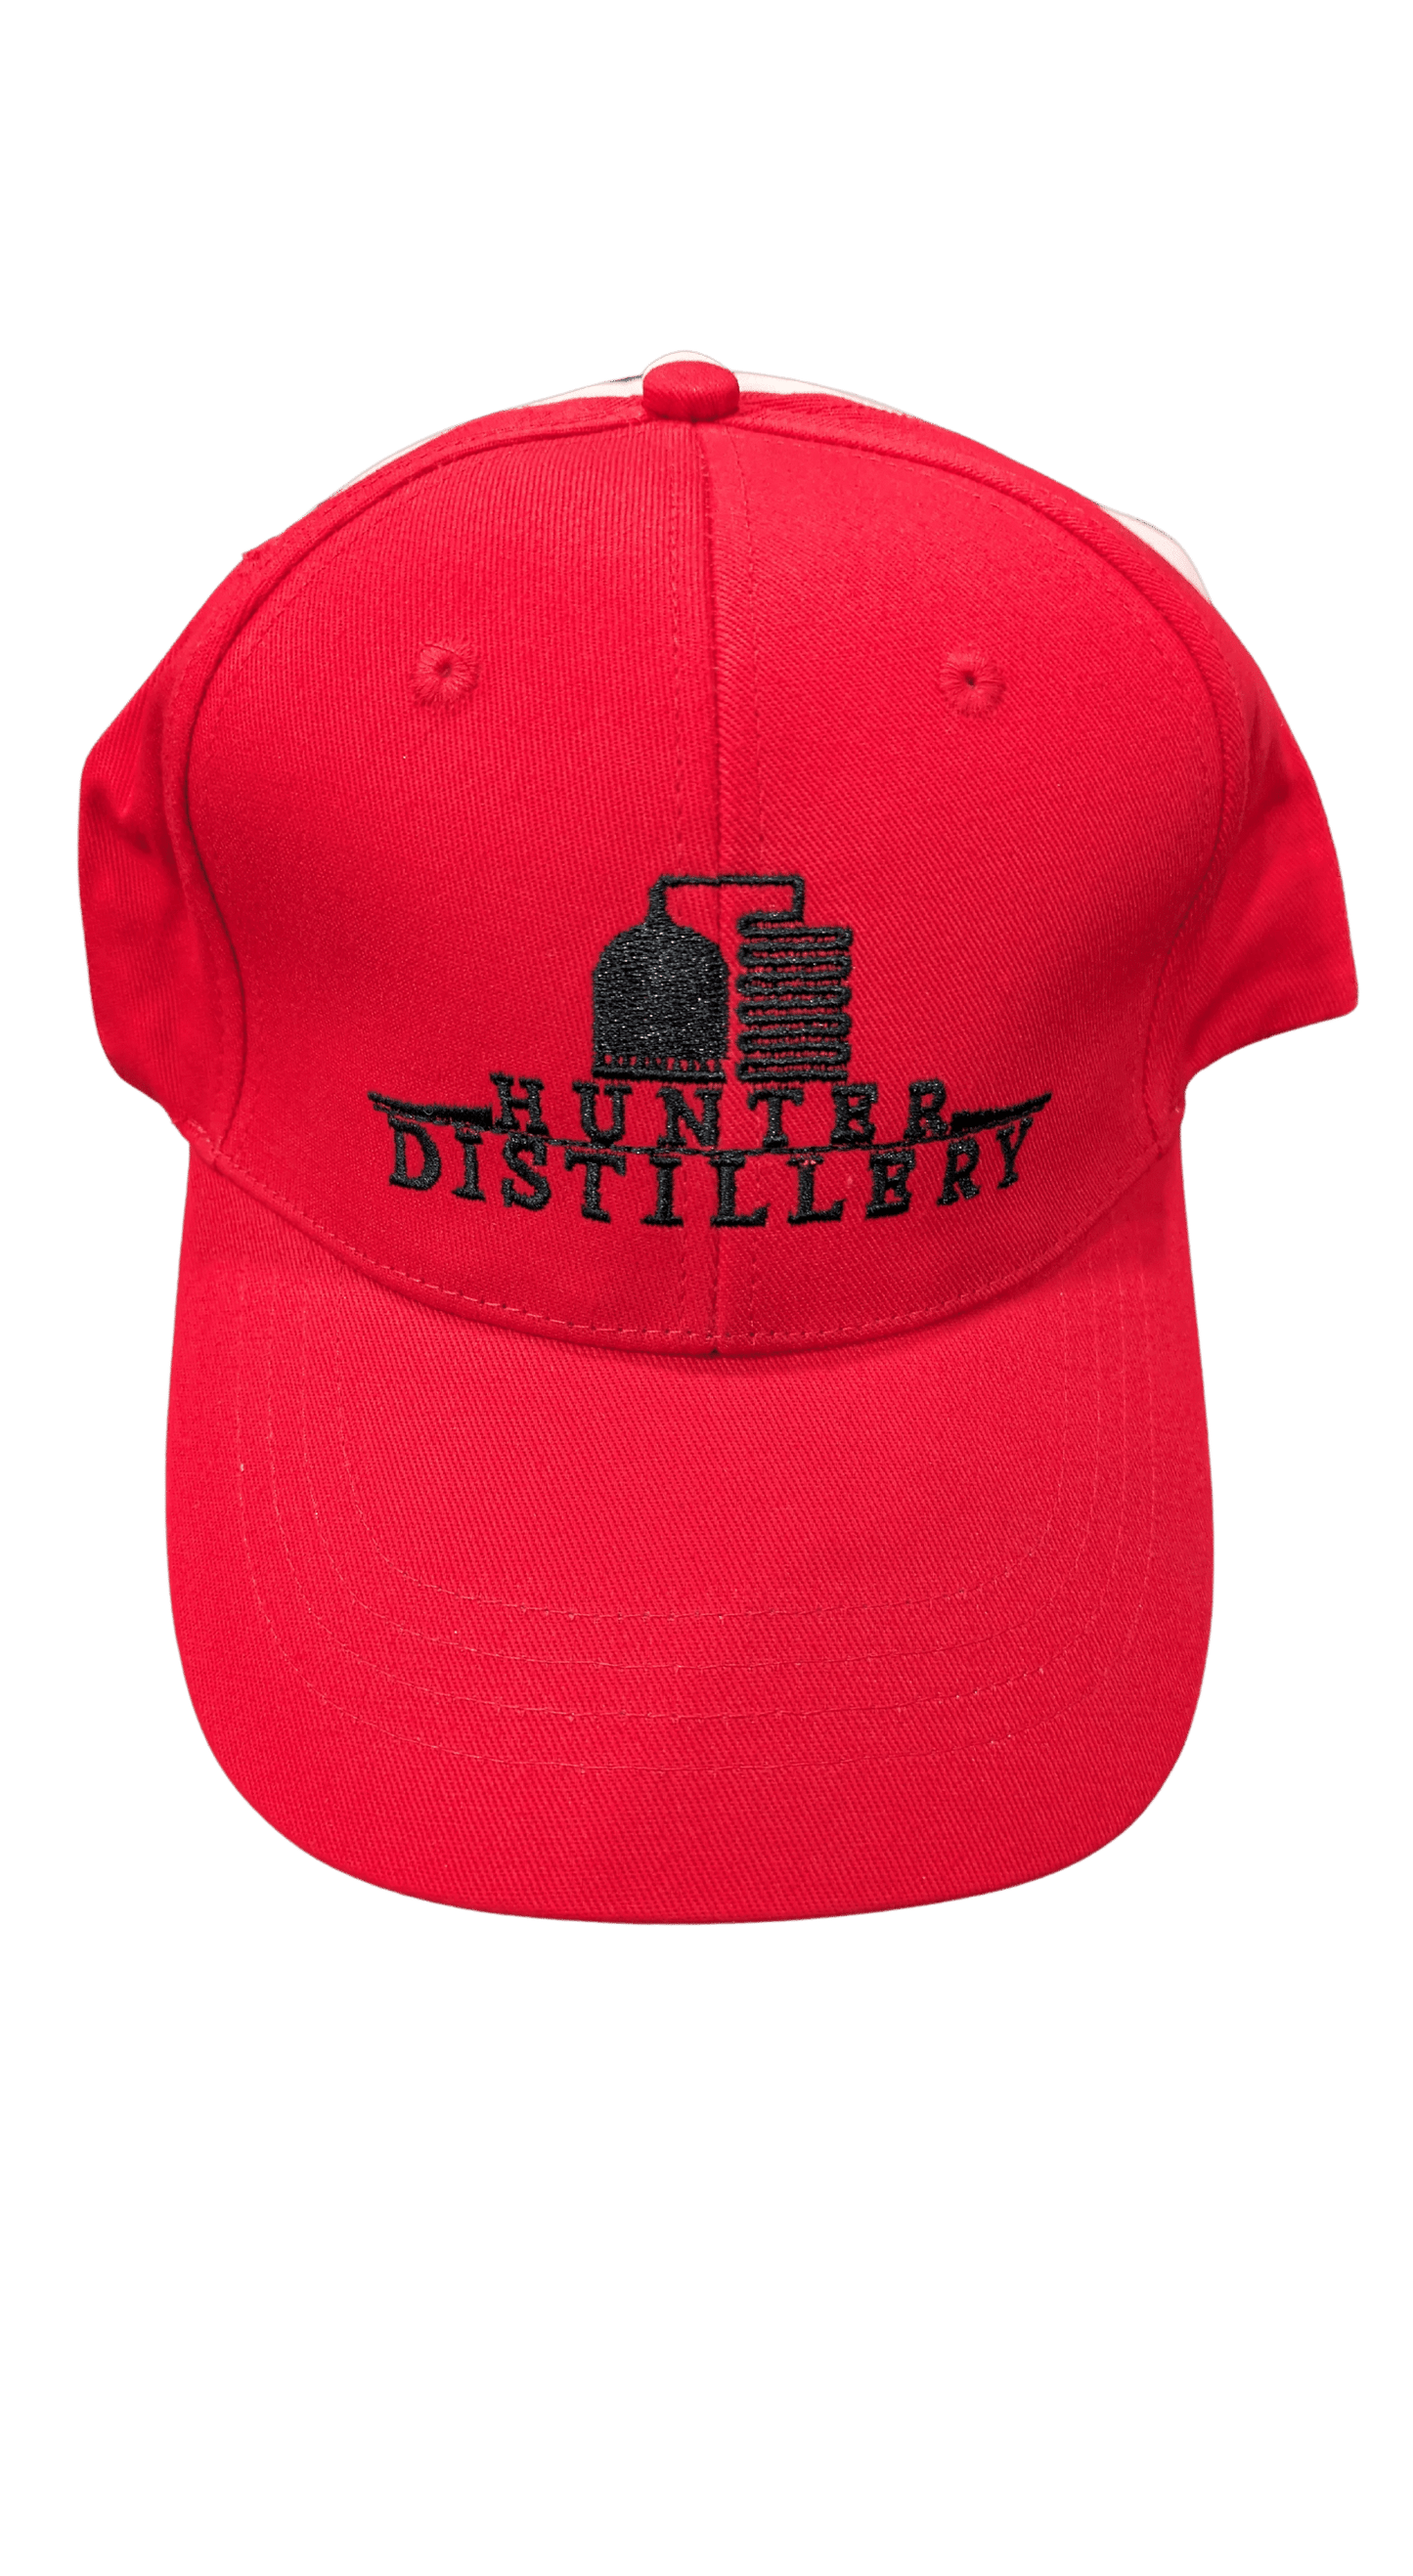 Hunter Distillery Caps